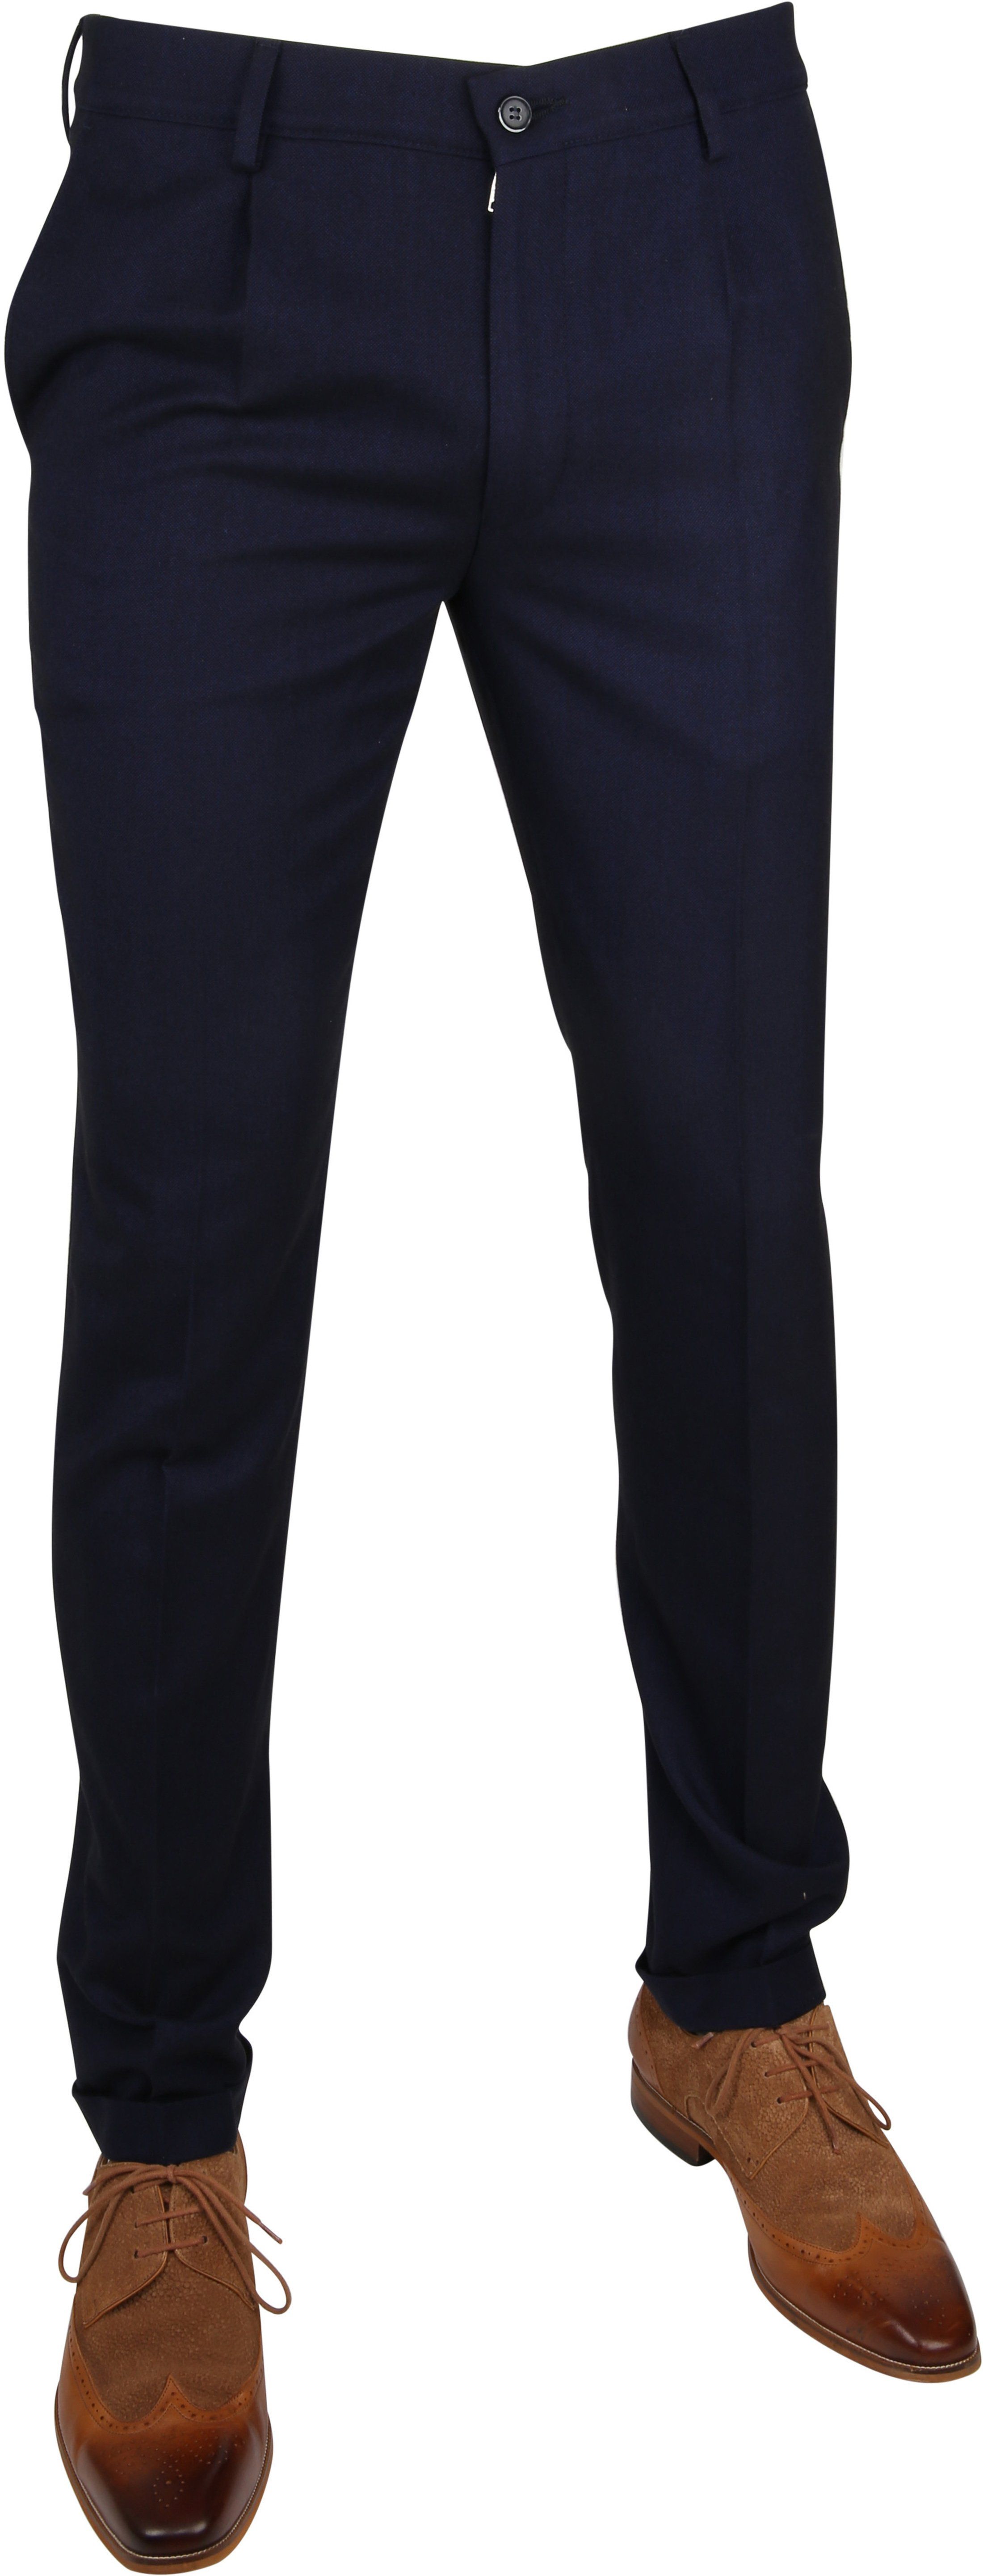 Suitable Premium Pants Rimini Navy Dark Blue size 44-R